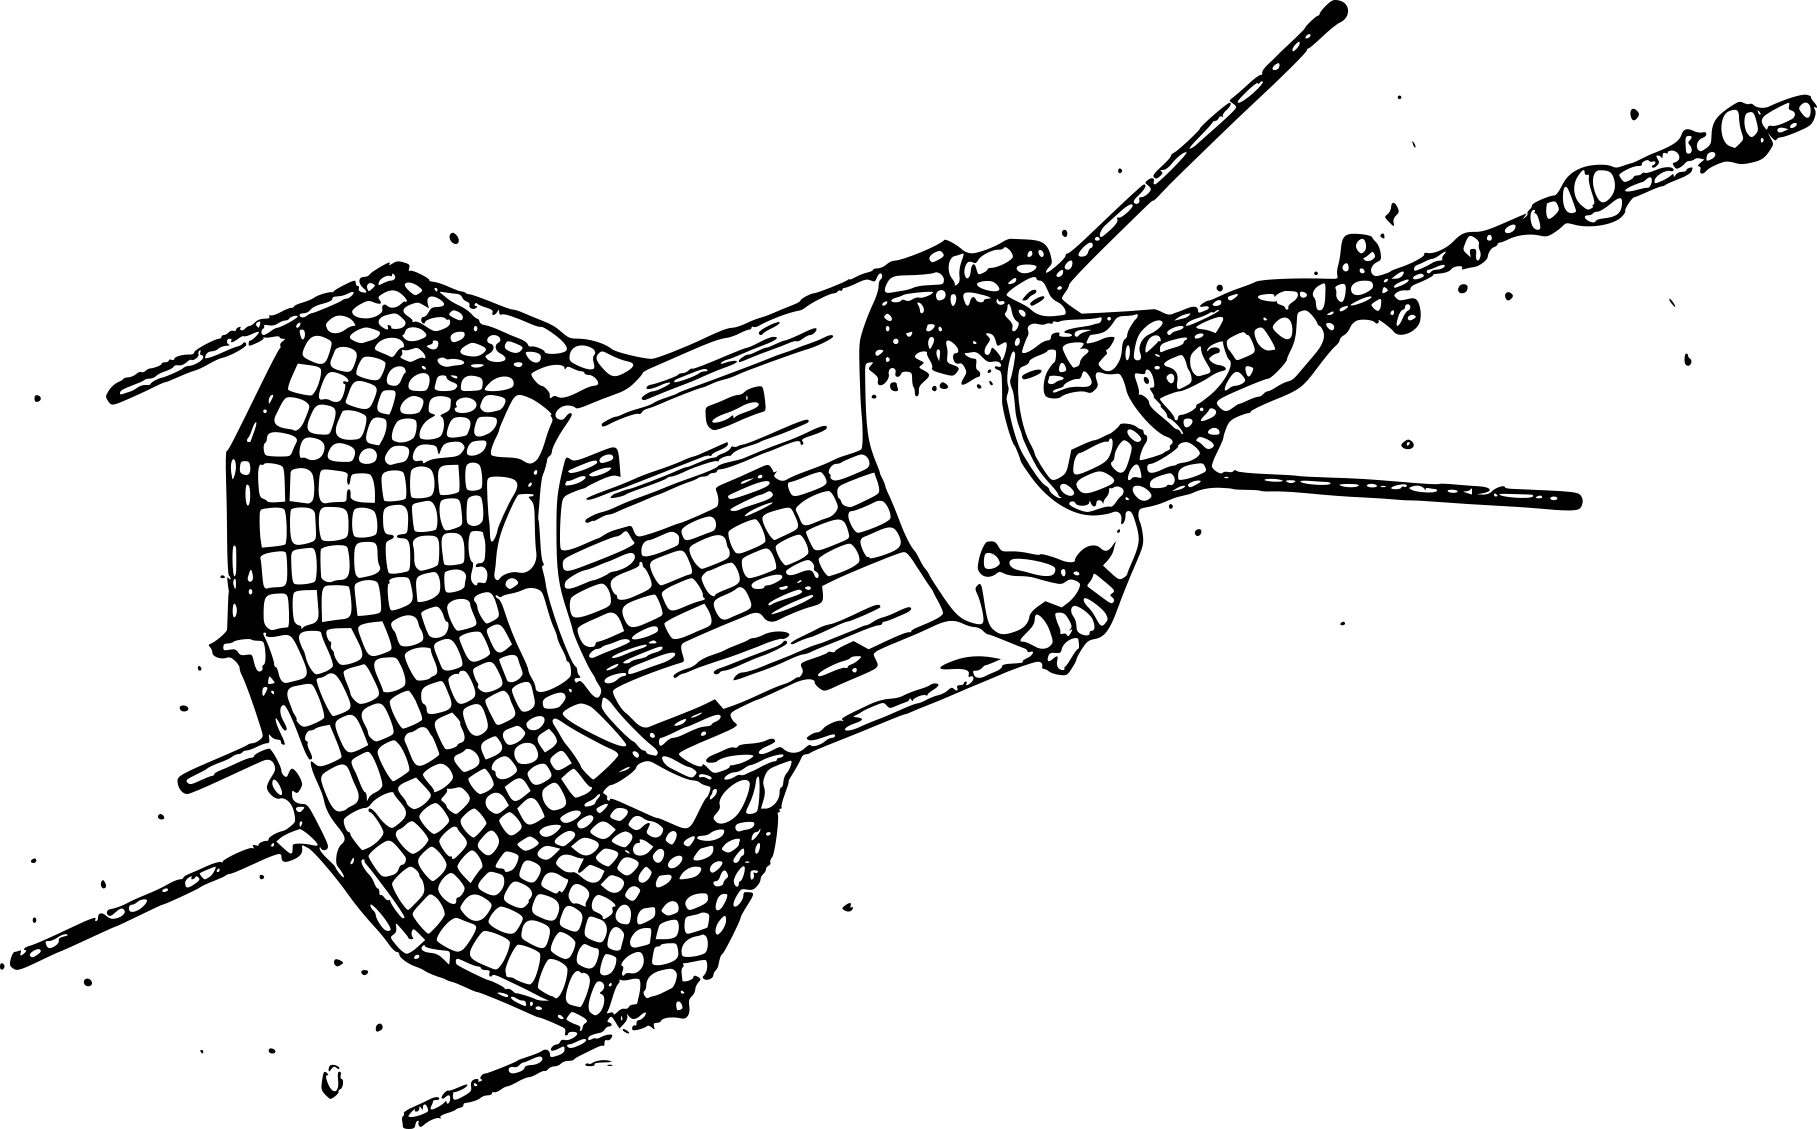 Чертеж ИСЗ Спутник 1. Космический аппарат "Гео-ИК" 2. Космический аппарат "Гео-ИК" 2 чертежи. ИСЗ «Коперник».